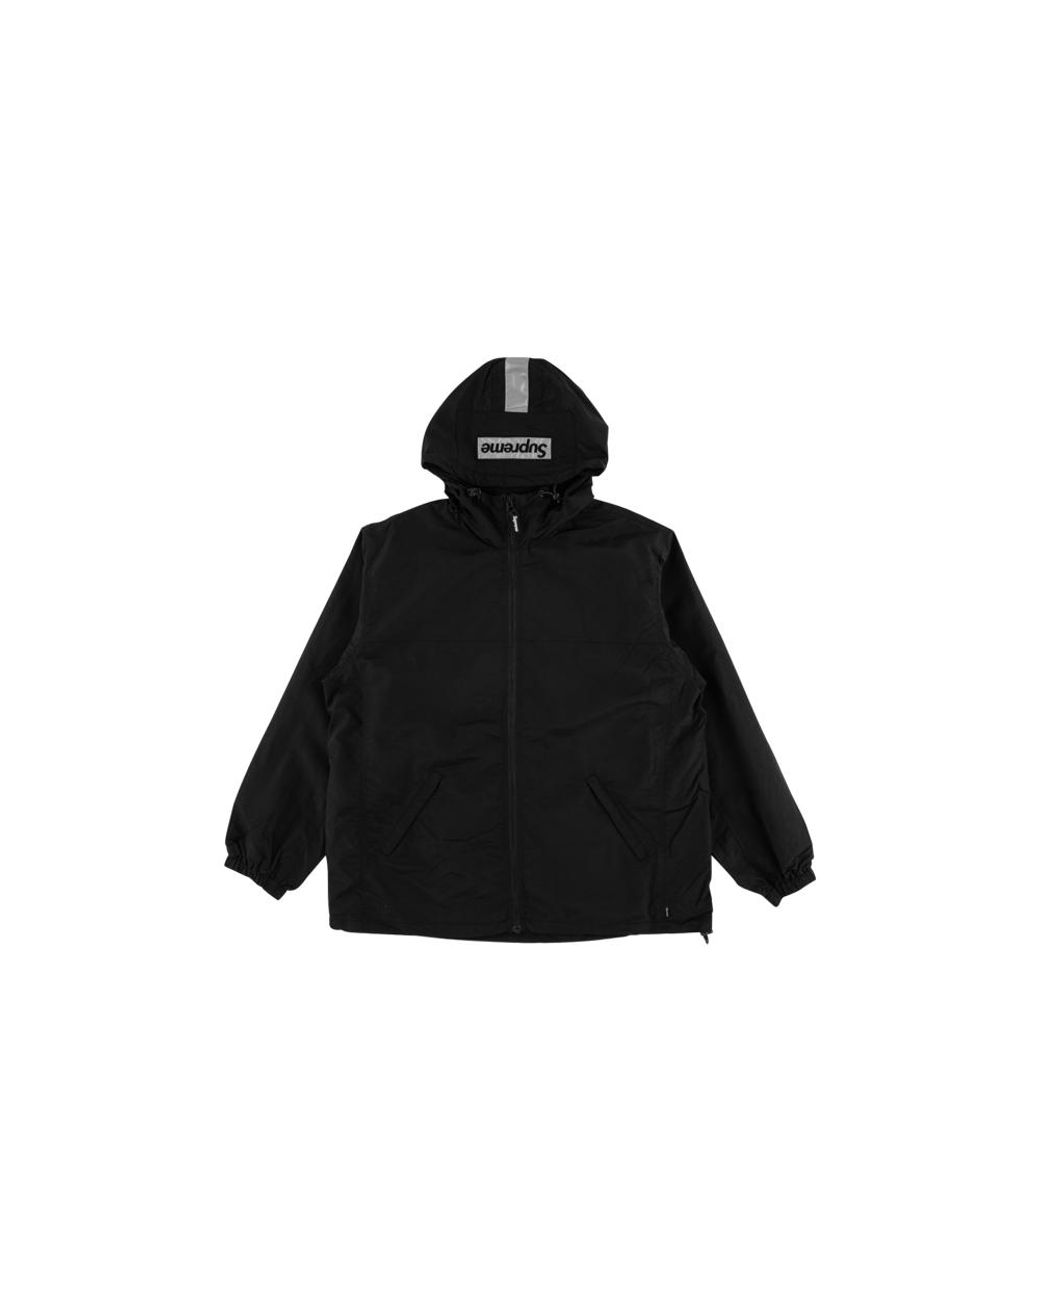 supreme two tone zip up jacket